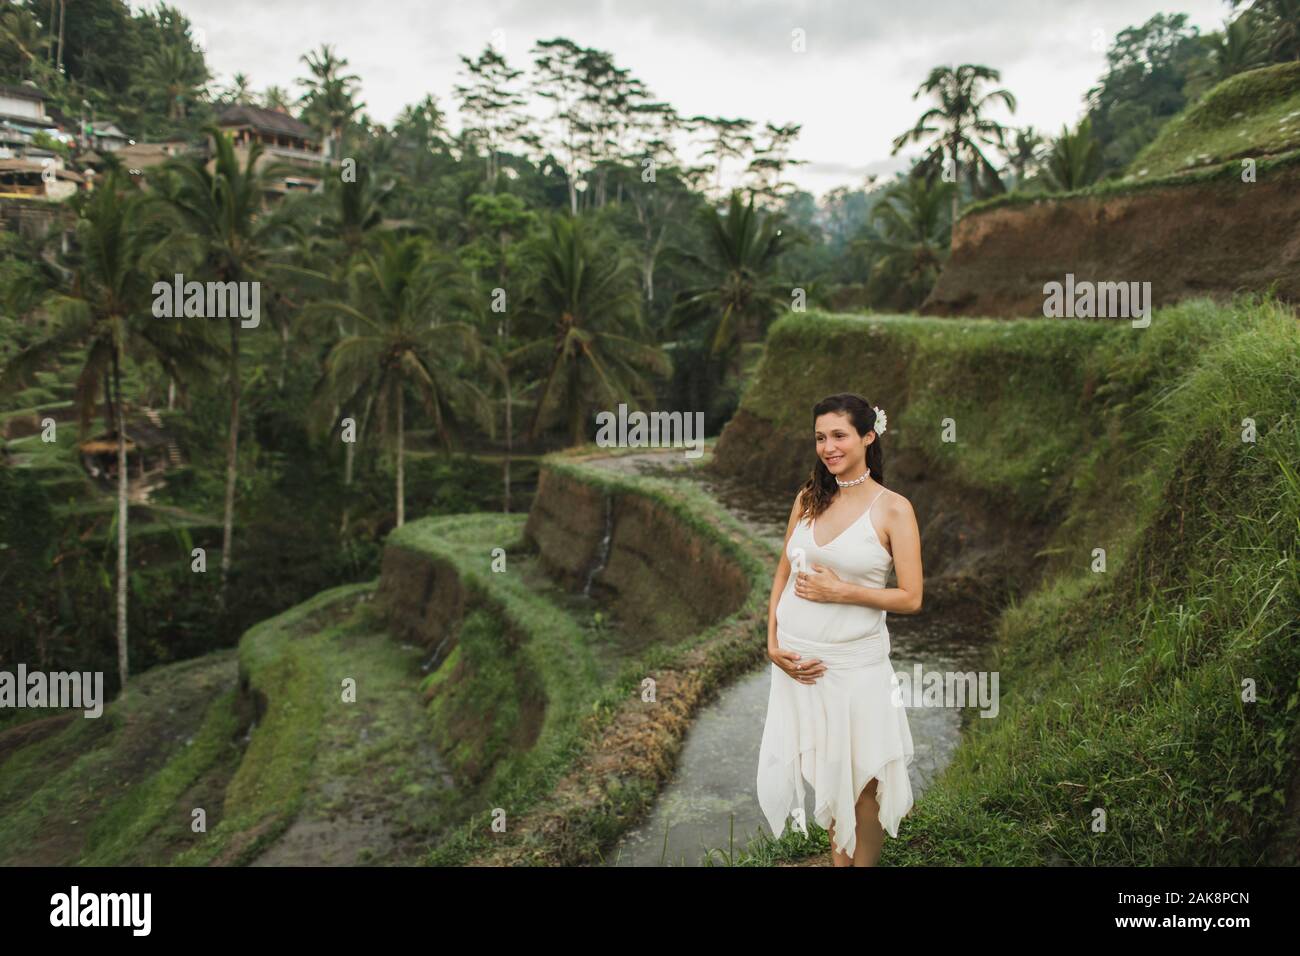 Jeune femme enceinte en robe blanche avec vue sur les rizières en terrasses  de Bali dans la lumière du soleil du matin. Harmonie avec la nature.  Concept de la grossesse Photo Stock -